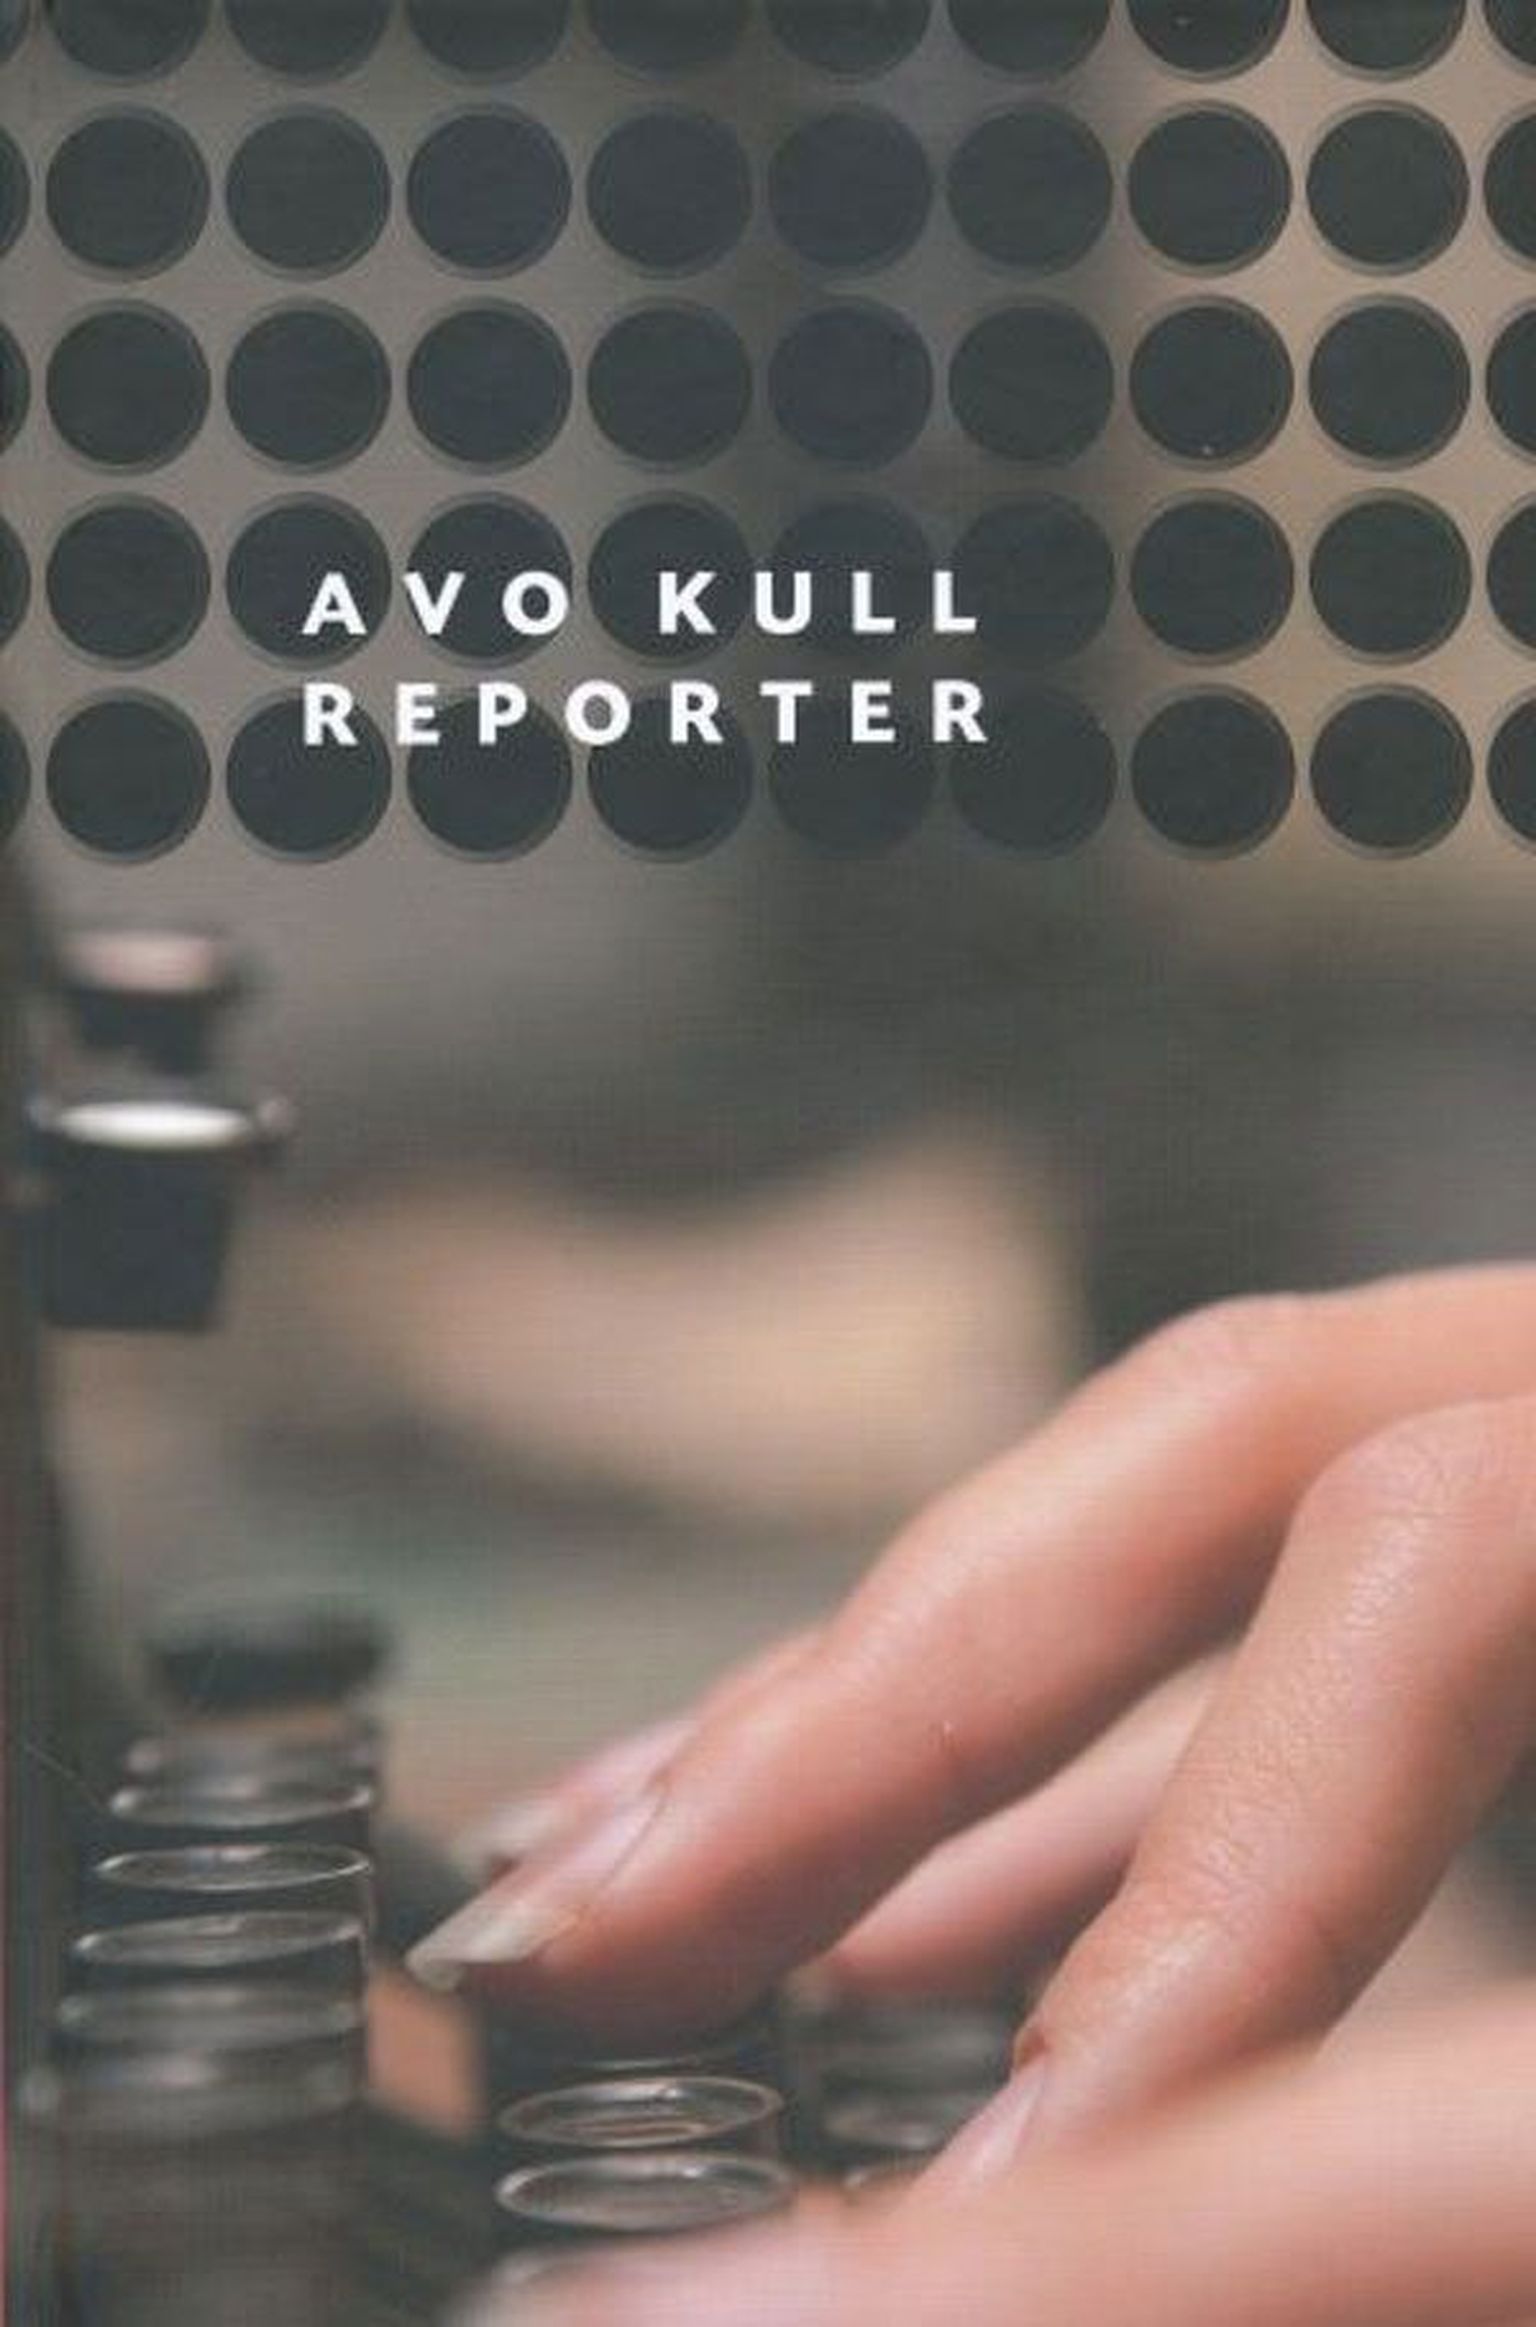 Raamat
Avo Kull
«Reporter»
Tänapäev, 2013
360 lk